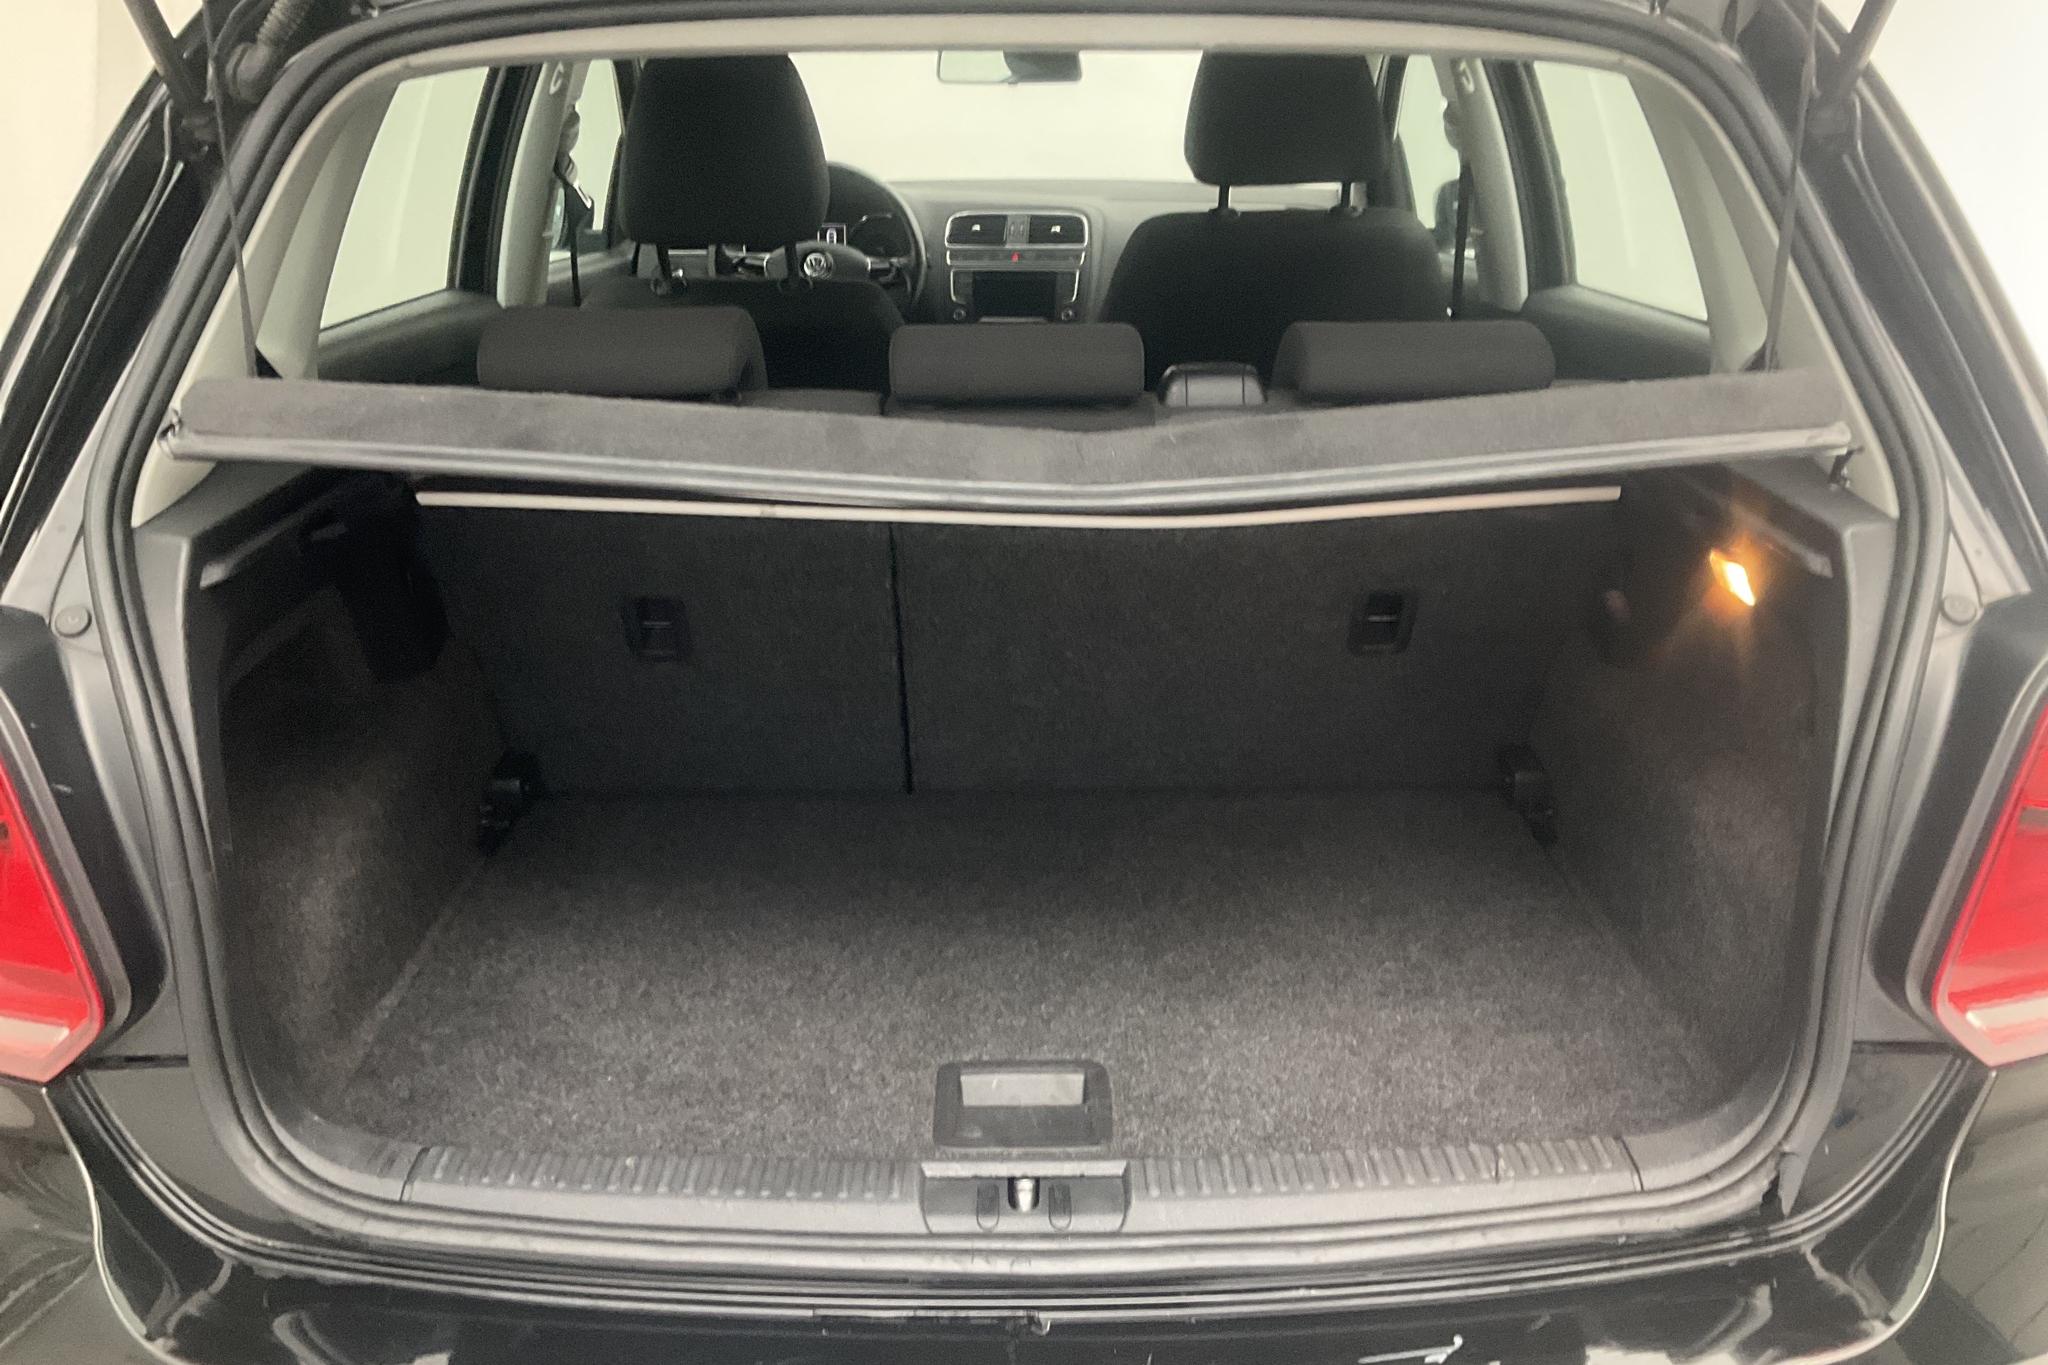 VW Polo 1.2 TSI 5dr (90hk) - 151 620 km - Manual - black - 2016